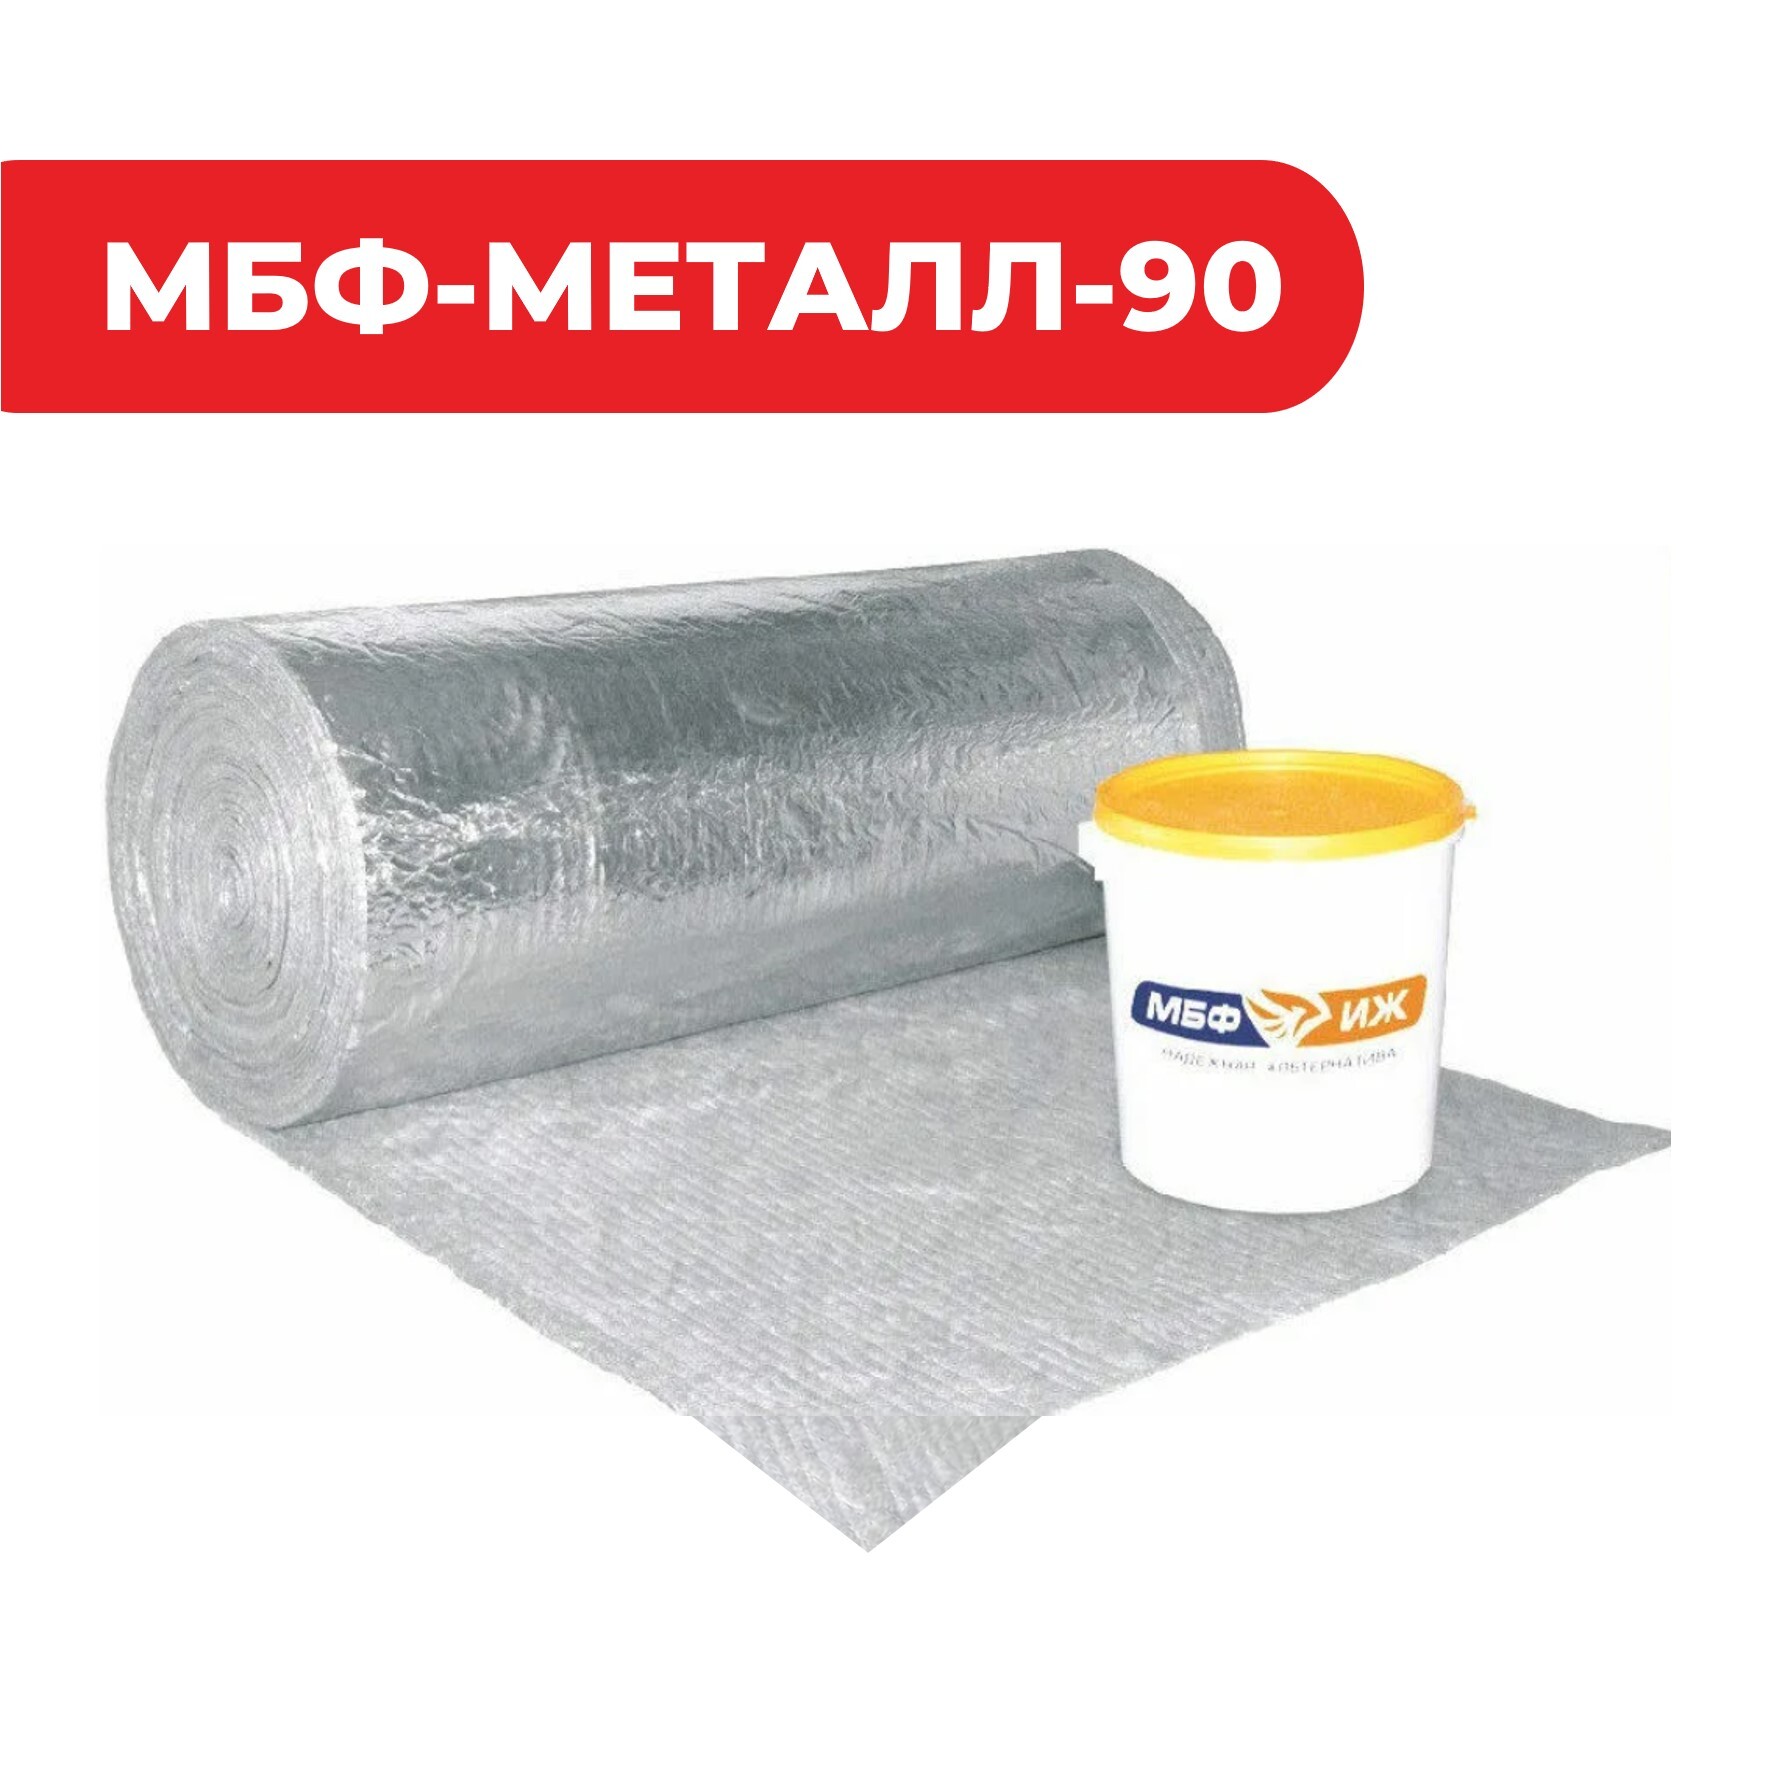 Конструктивная система огнезащиты металлоконструкций «МБФ-МЕТАЛЛ-90»